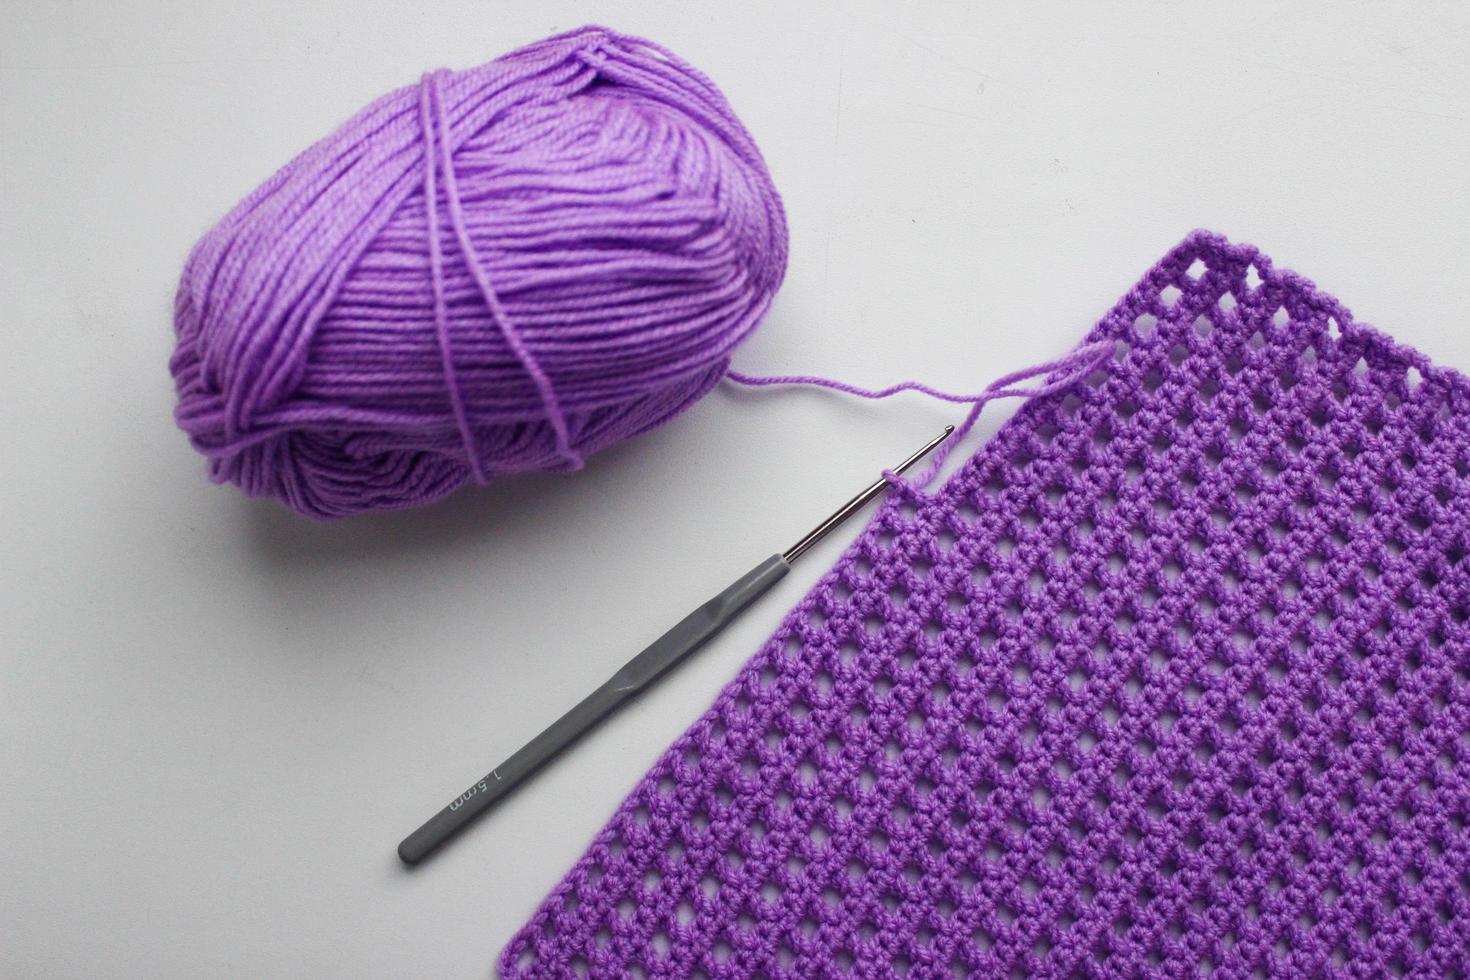 pelote de laine, crochet et un morceau de lin tricoté photo